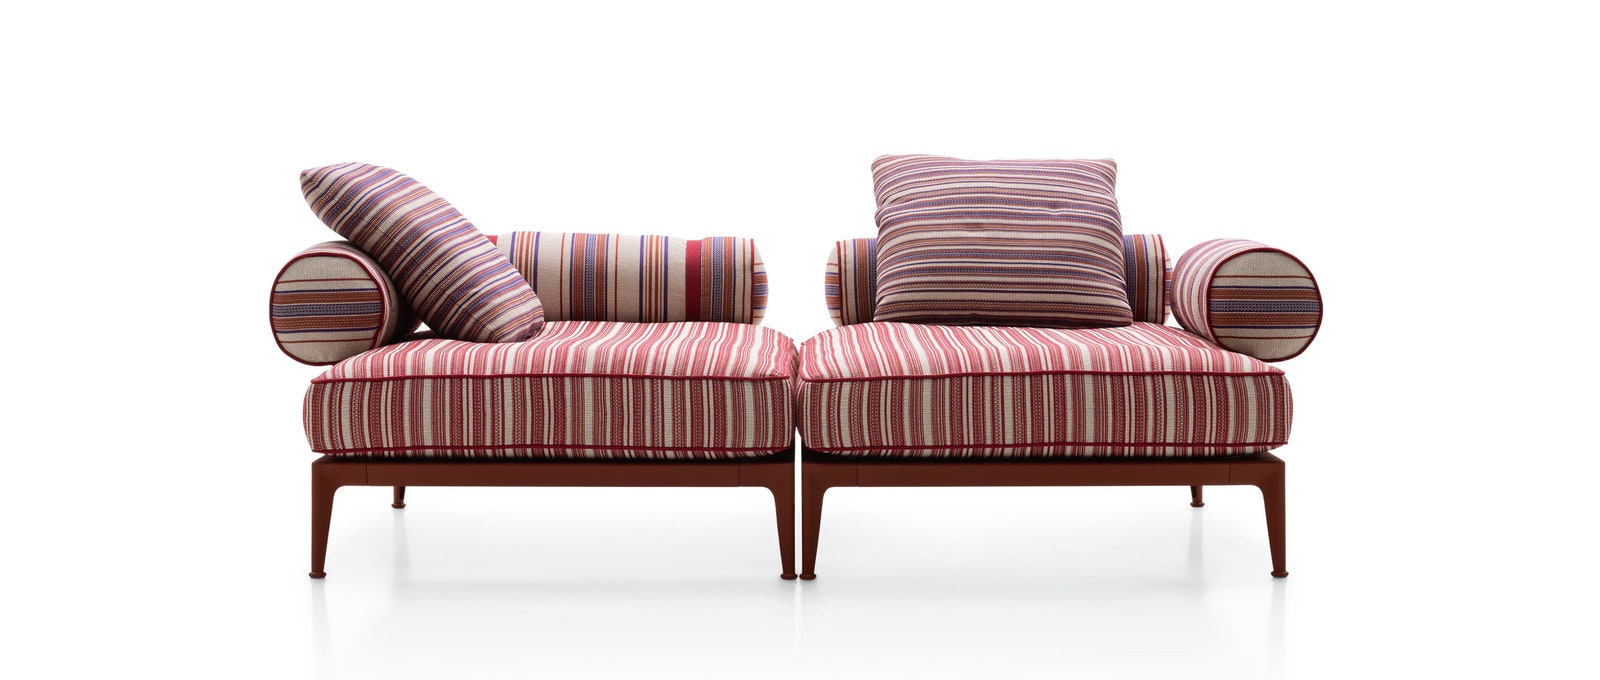 Модульный диван Ribes из коллекции уличной мебели 2019 года.